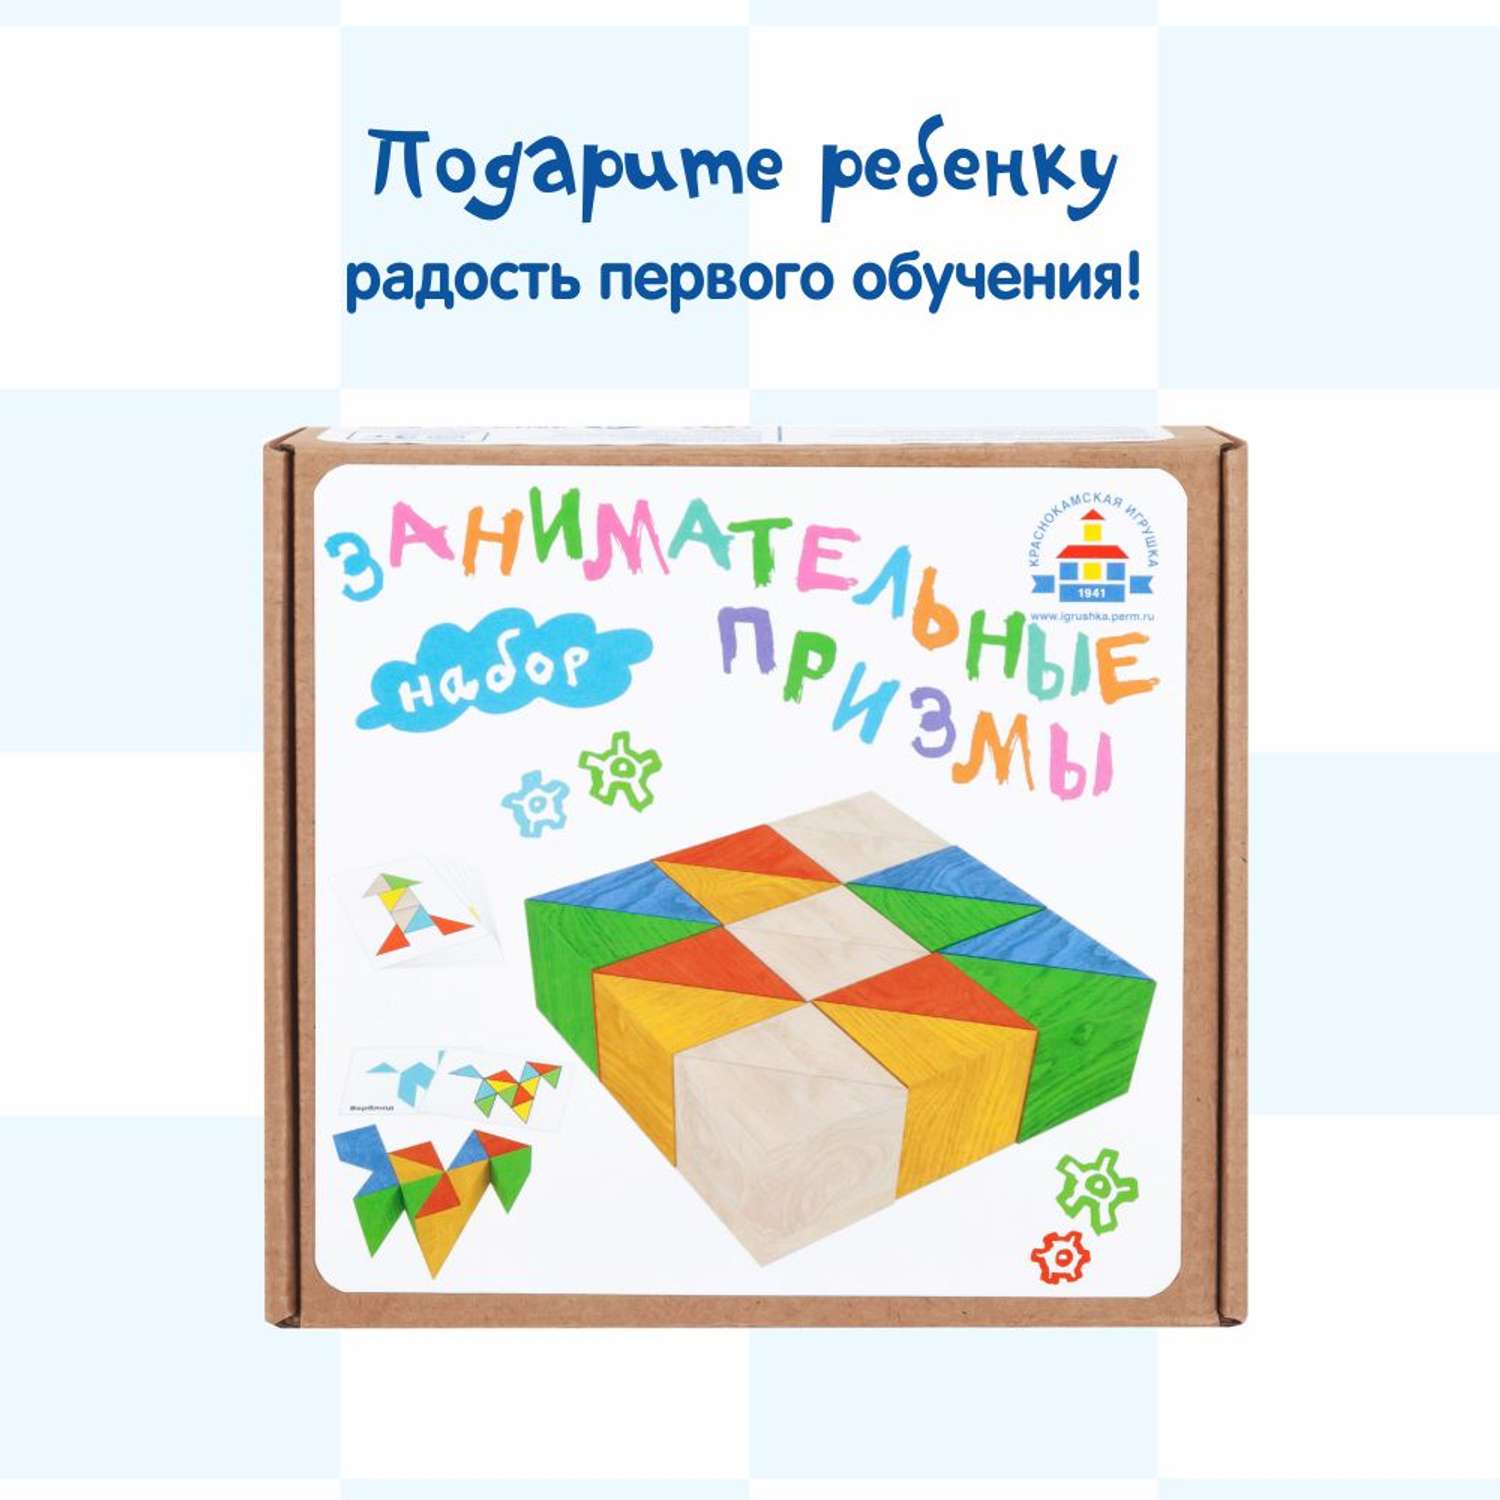 Обучающий набор Краснокамская игрушка Занимательные призмы - фото 11